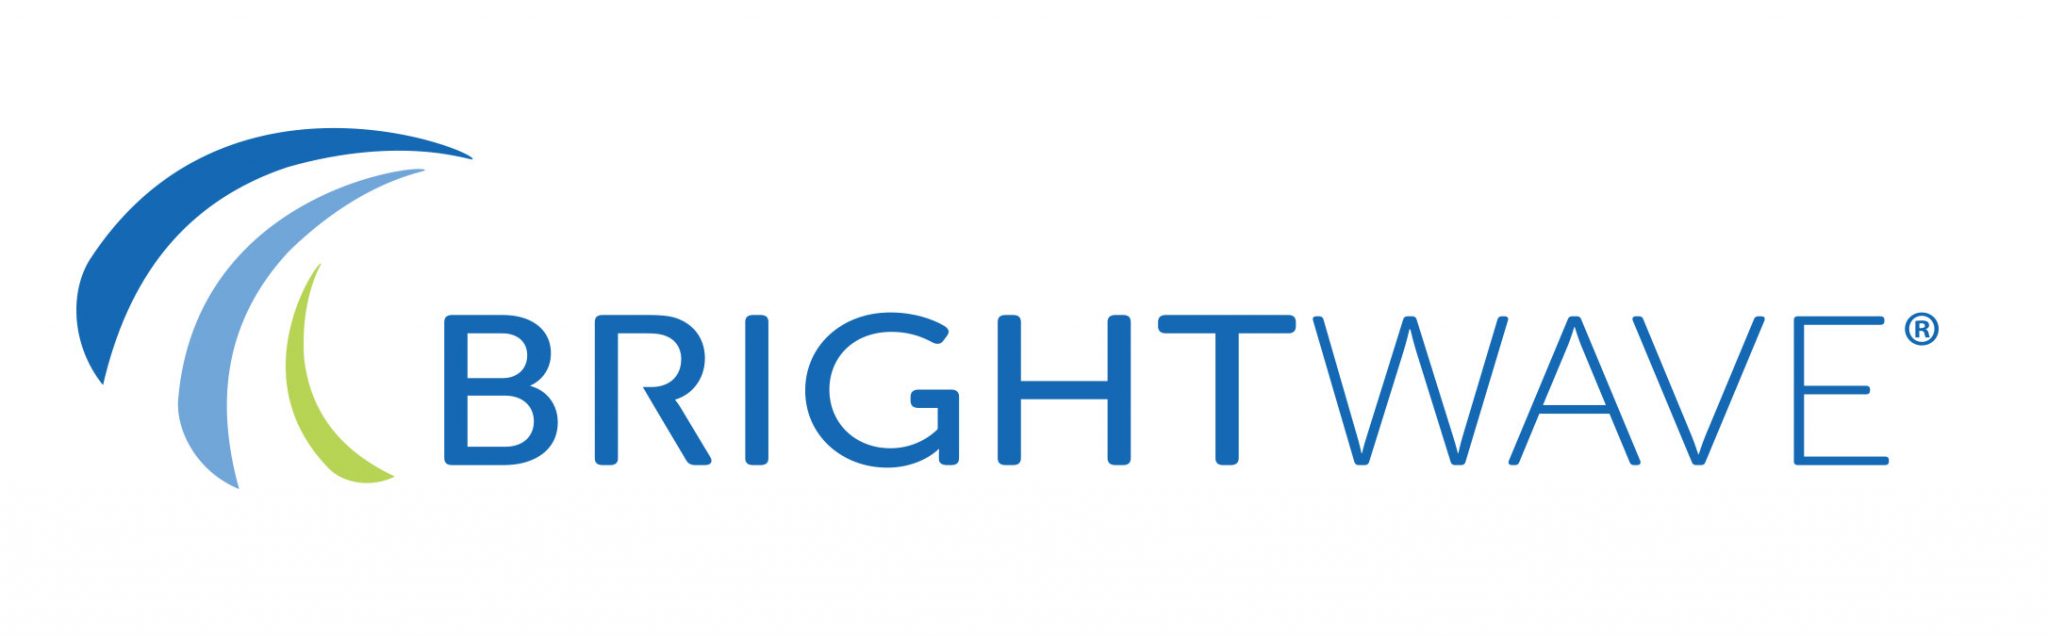 brightwave logo